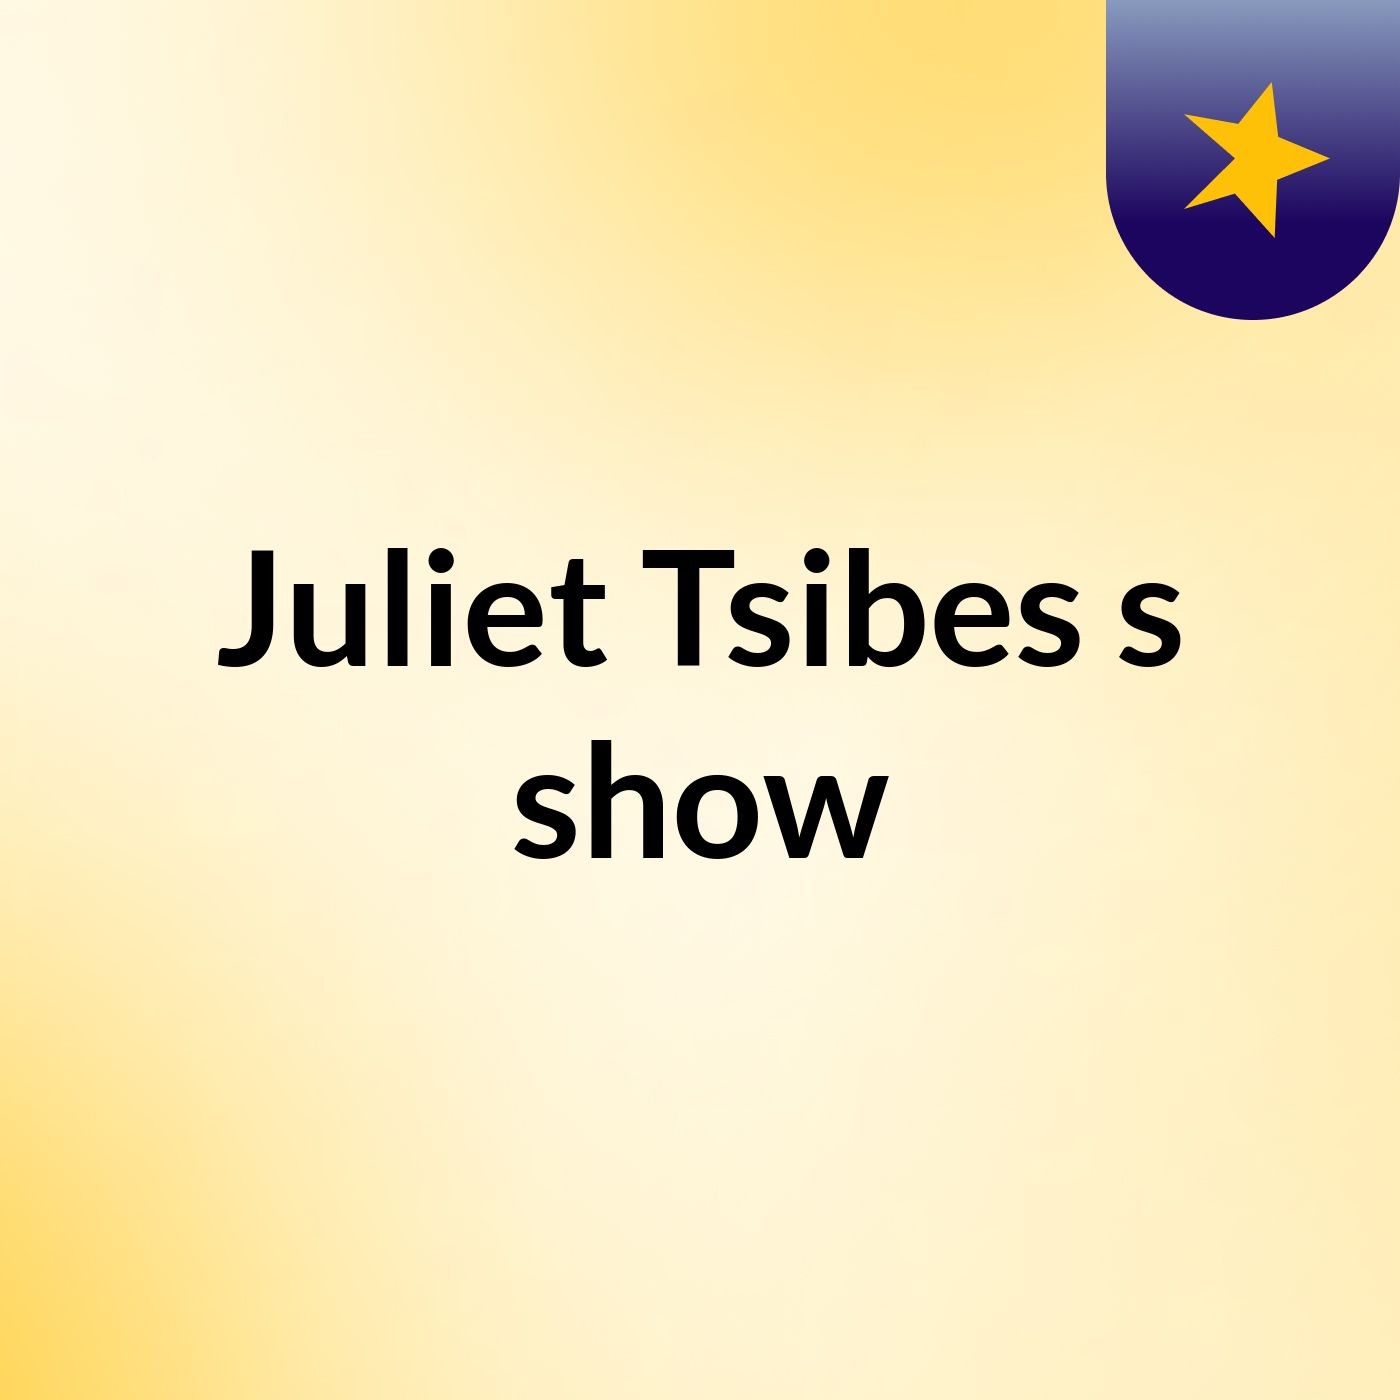 Juliet Tsibes's show